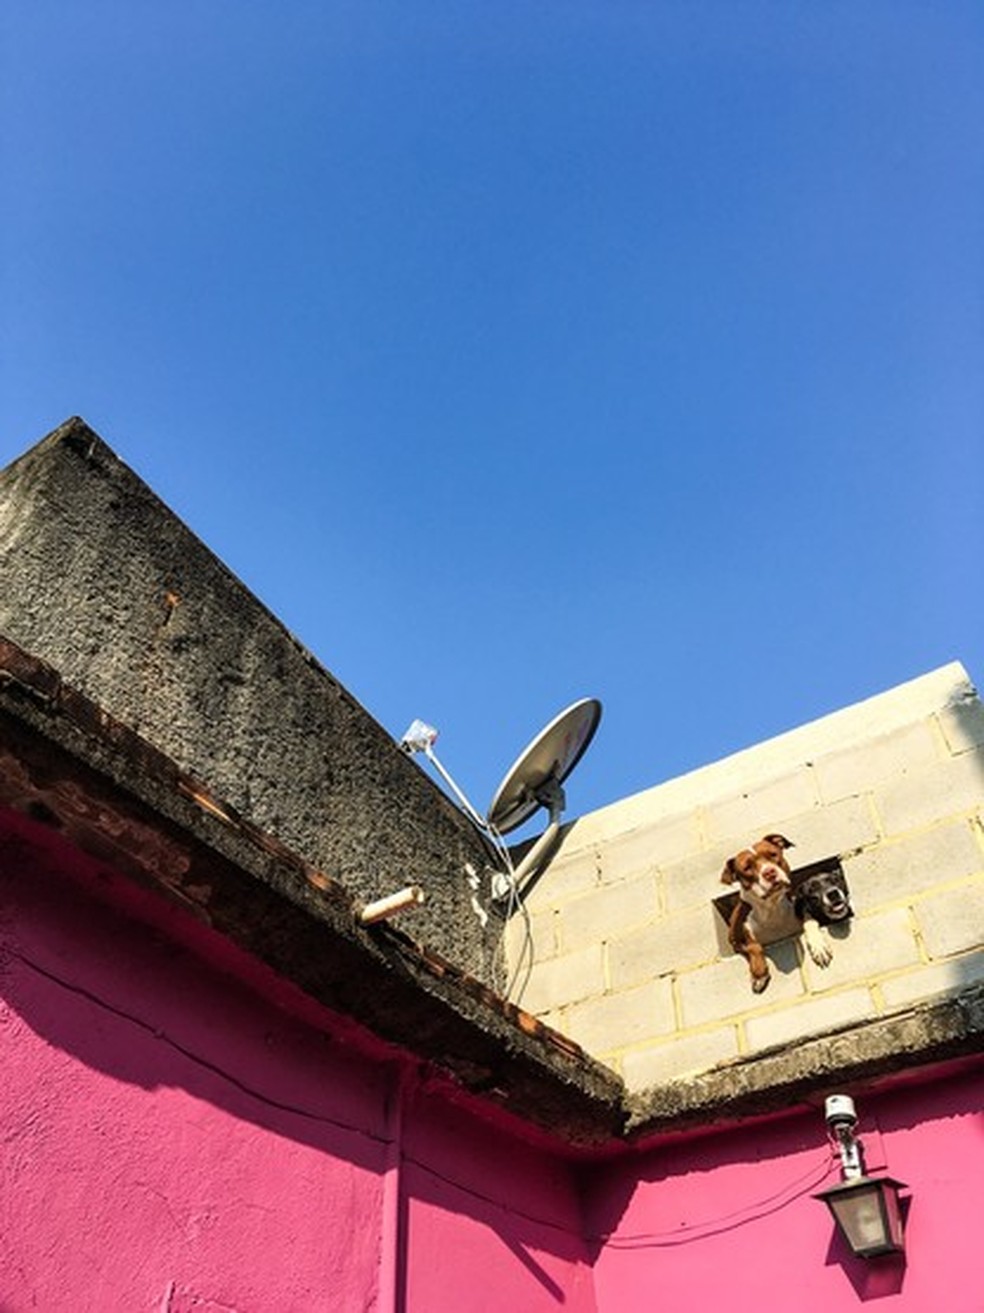 Dois cães dividem espaço em uma janela  — Foto: Anderson Valentim/Favelagrafia